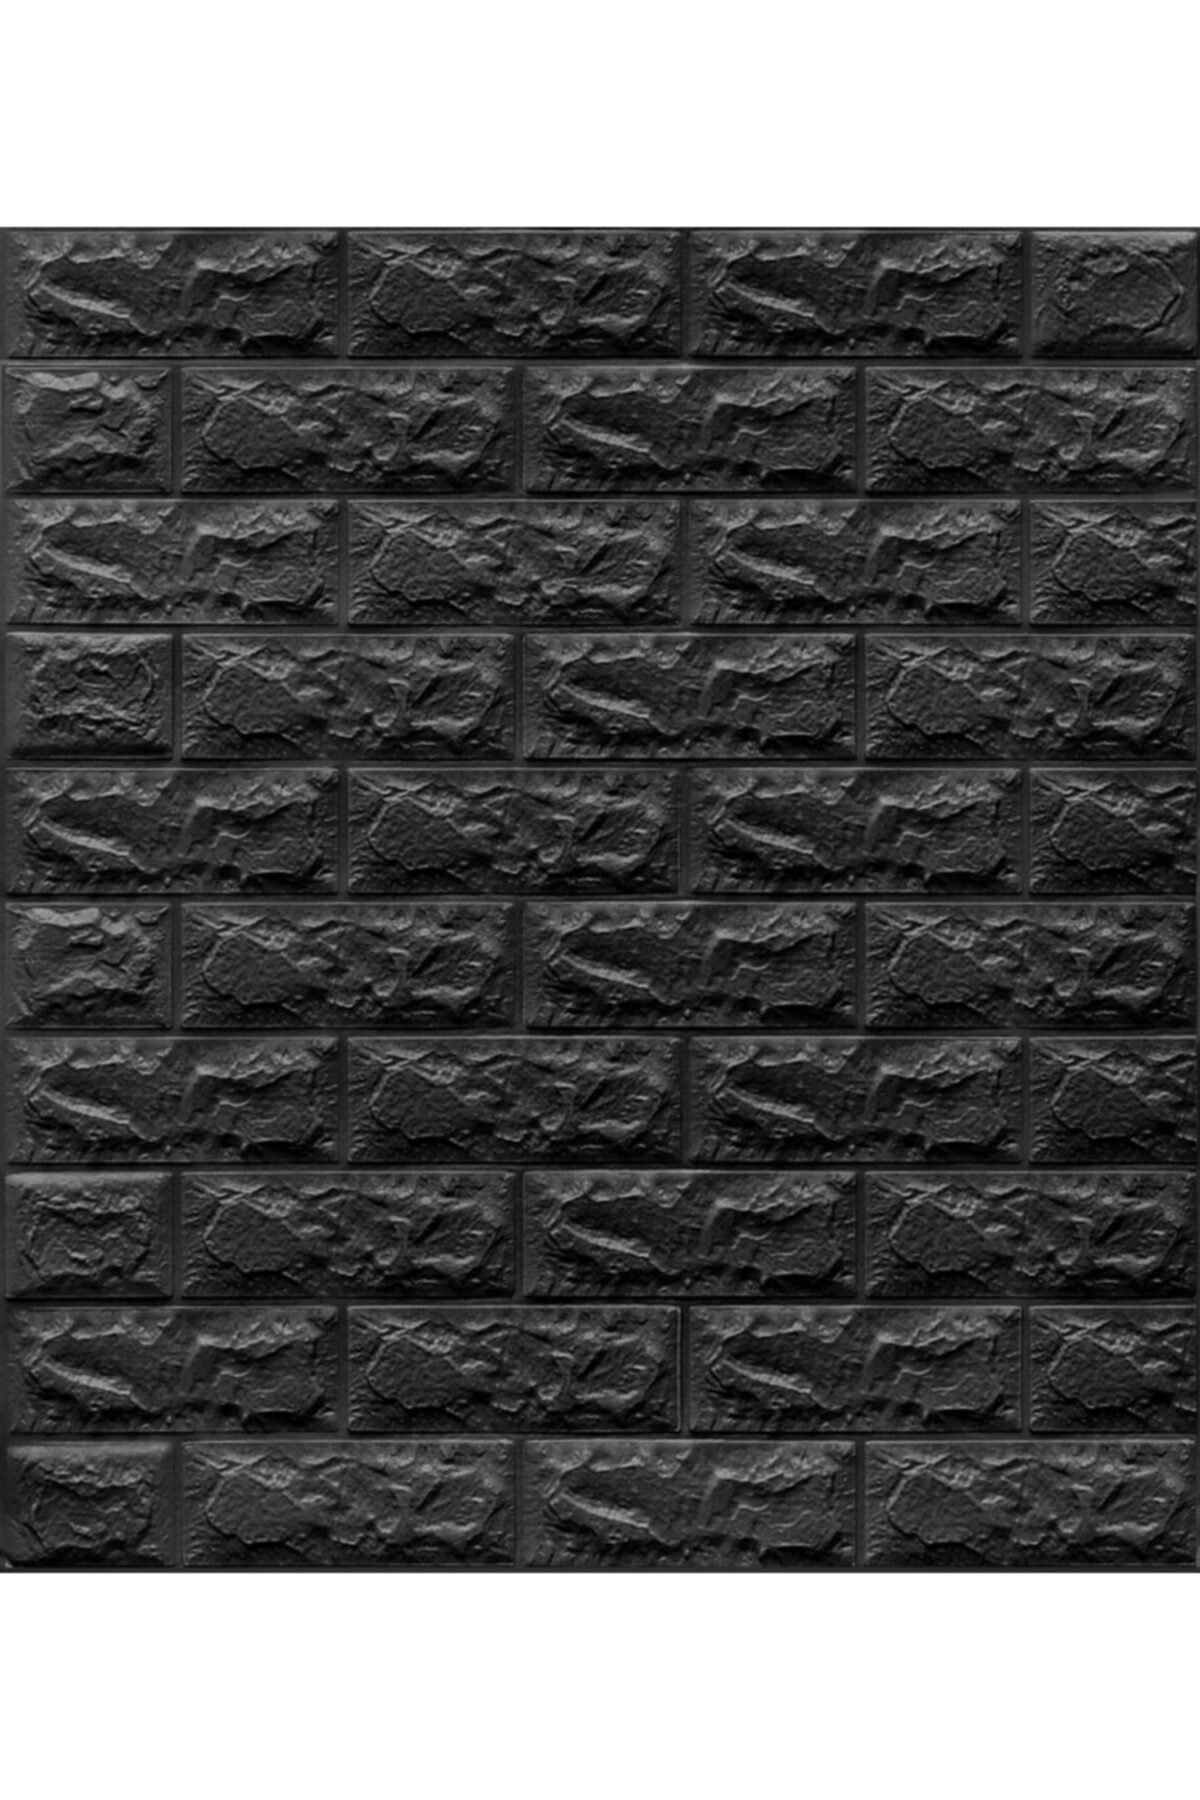 Renkli Duvarlar Nw06 Parlak Siyah Kendinden Yapışkanlı 3d Dekoratif Duvar Paneli